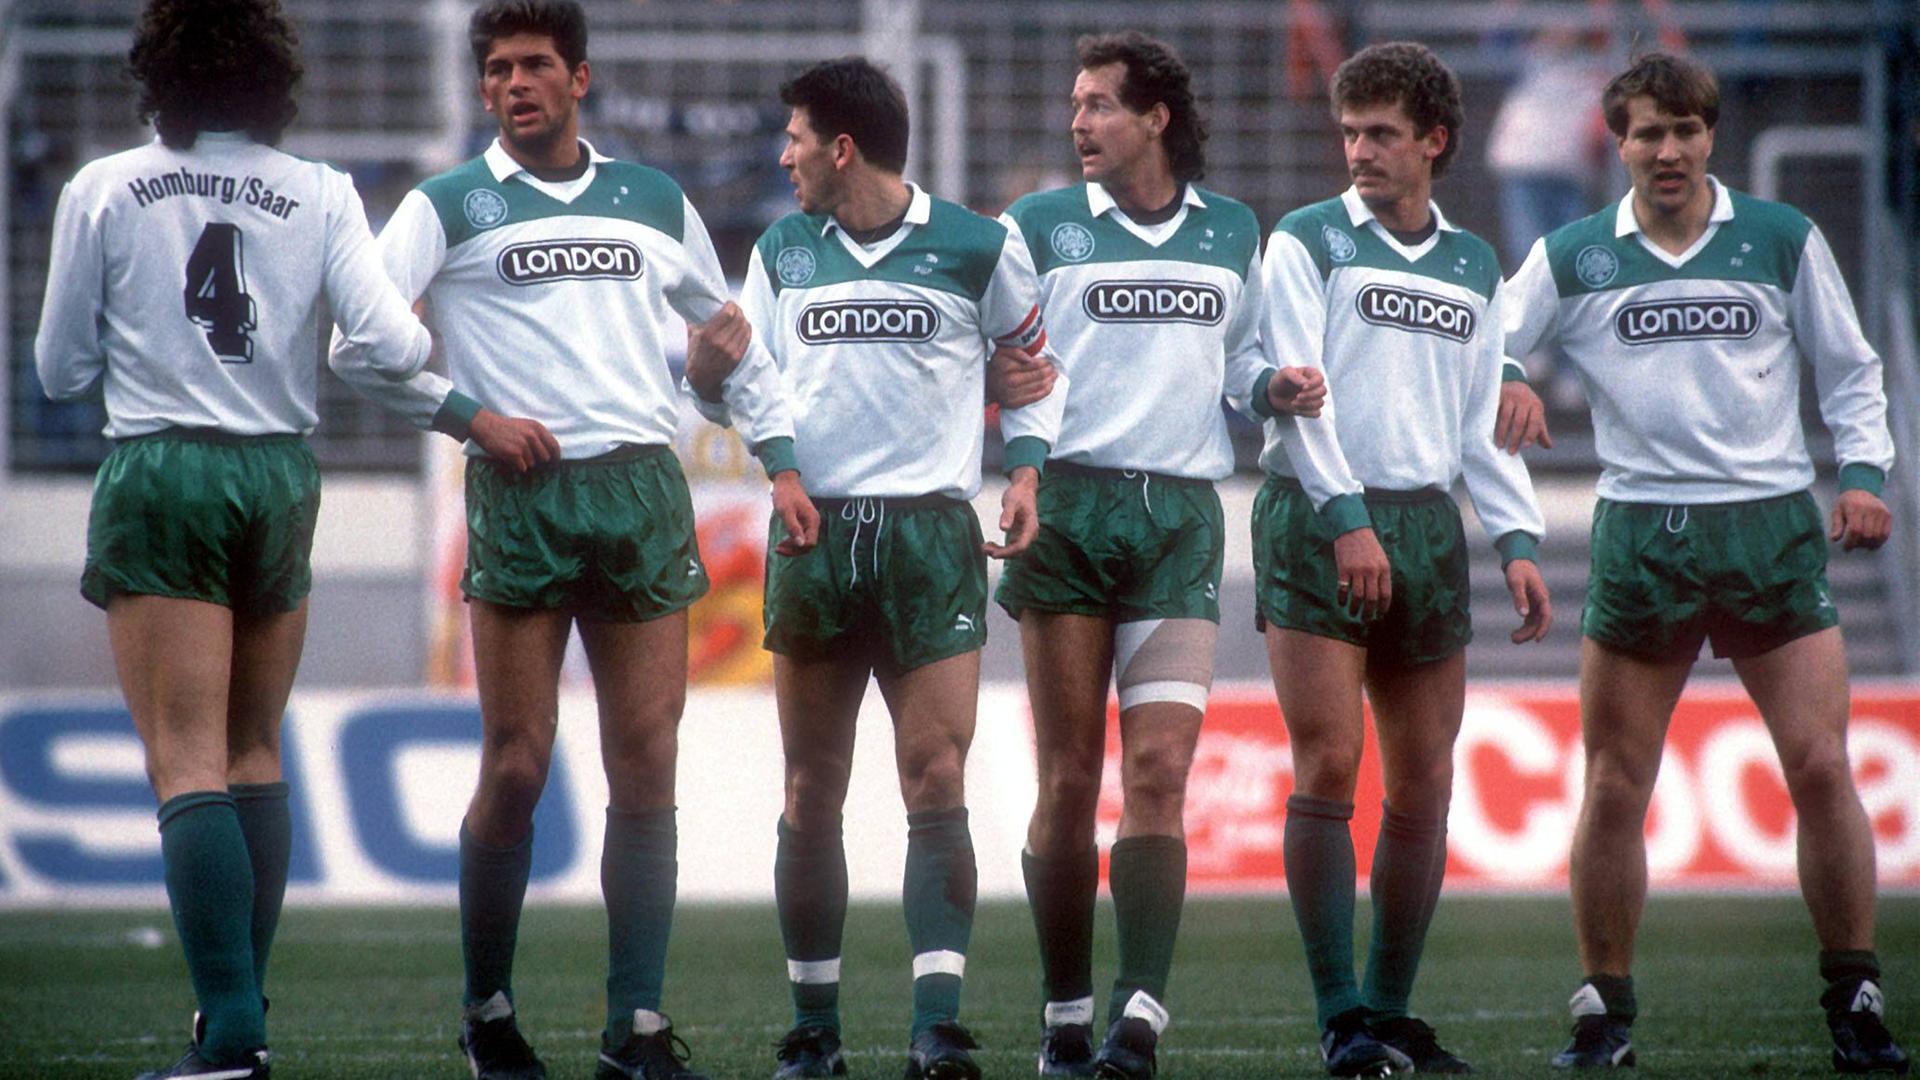 Bundesliga 1987/88: FC-Homburg-Spieler mit London-Werbung